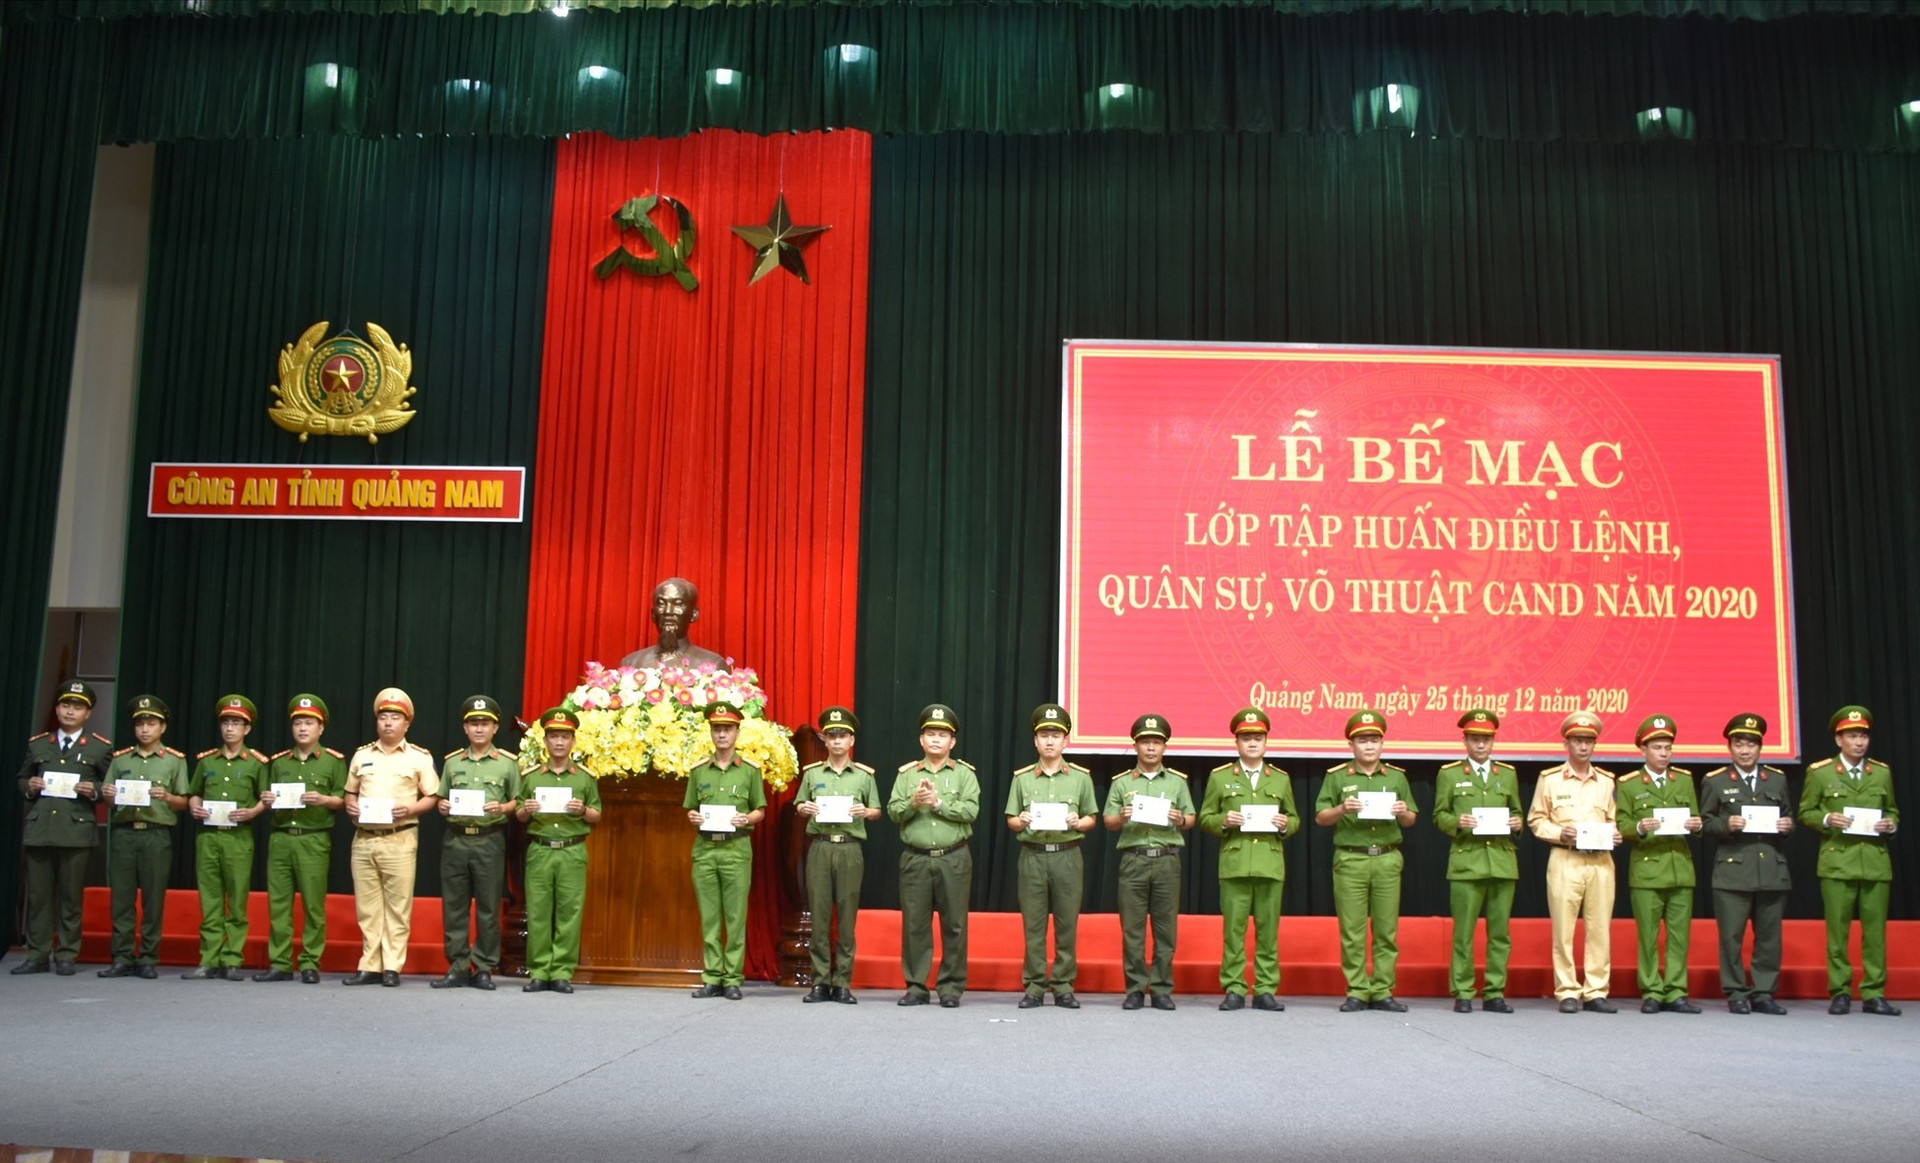 Đại tá Huỳnh Sông Thu - Phó Giám đốc Công an tỉnh Quảng Nam trao chứng nhận cho cán bộ chiến sĩ tham gia lớp tập huấn.